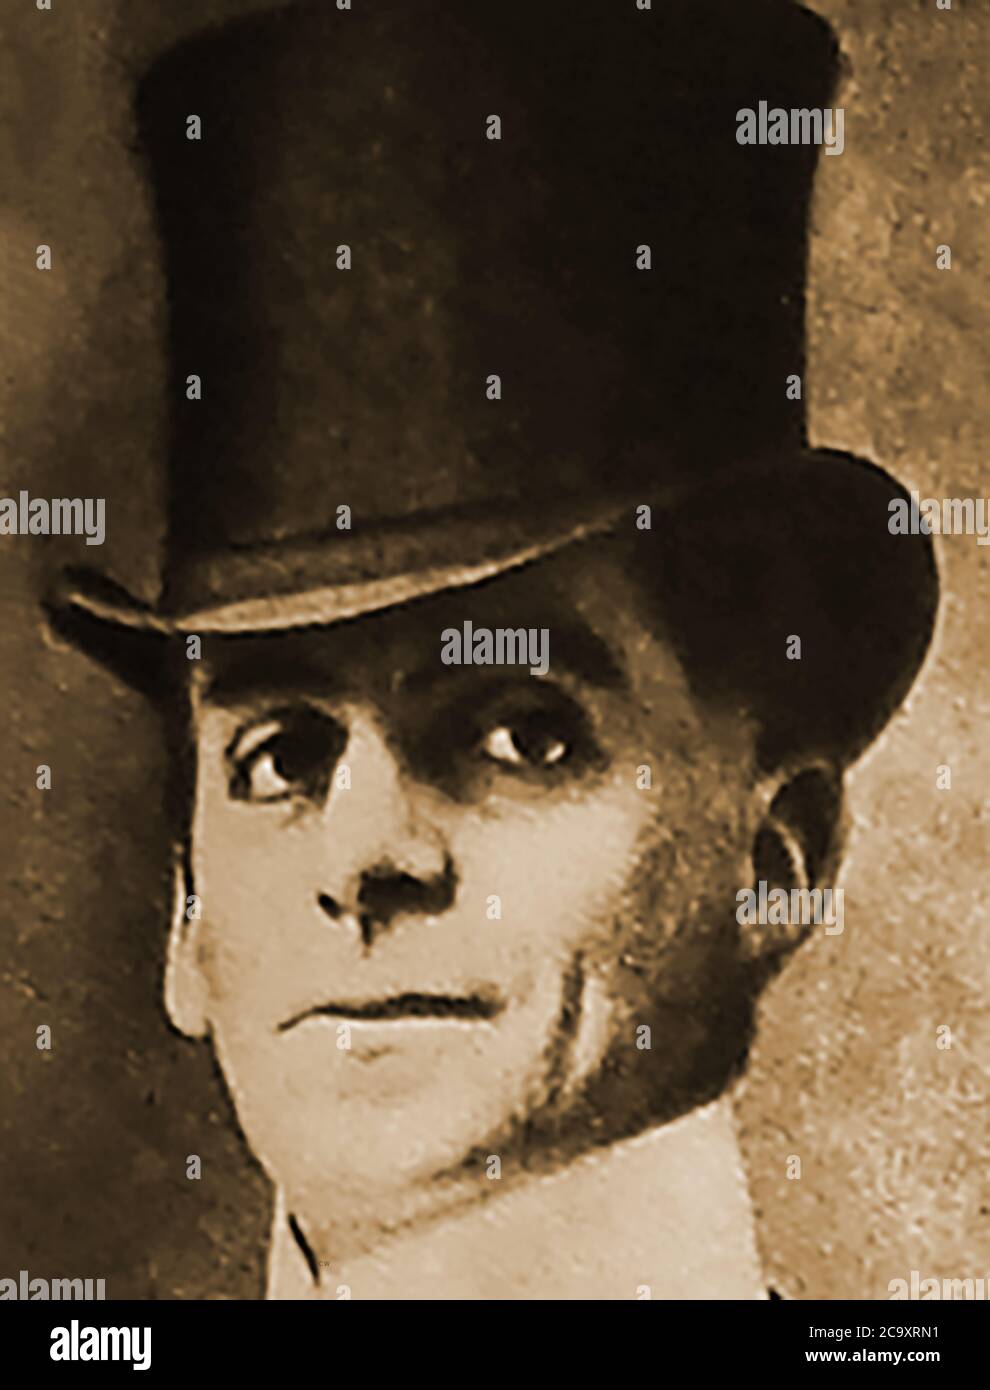 Porträt des beliebten Komikers und Schauspielers Arthur Roberts (1852-1933) in einem Hut gekleidet. Roberts war ein englischer Komiker, Music Hall Entertainer und Schauspieler, der für das Spielen von weiblichen Charakteren und Pantomime-Dames bekannt war. Ihm wird auch die Prägung des Wortes "poof" zugeschrieben. HE Roberts hatte in den 1890ern einen Hit-Erfolg mit dem Song 'Daddy Would't Buy Me A Bow Wow', popularisierte den Song Topsey-Turvey und erfand das Kartenspiel 'Spoof' mit Trickerei und Täuschung. Seine Biographie wurde 'fünfzig Jahre der Parodie' genannt Stockfoto